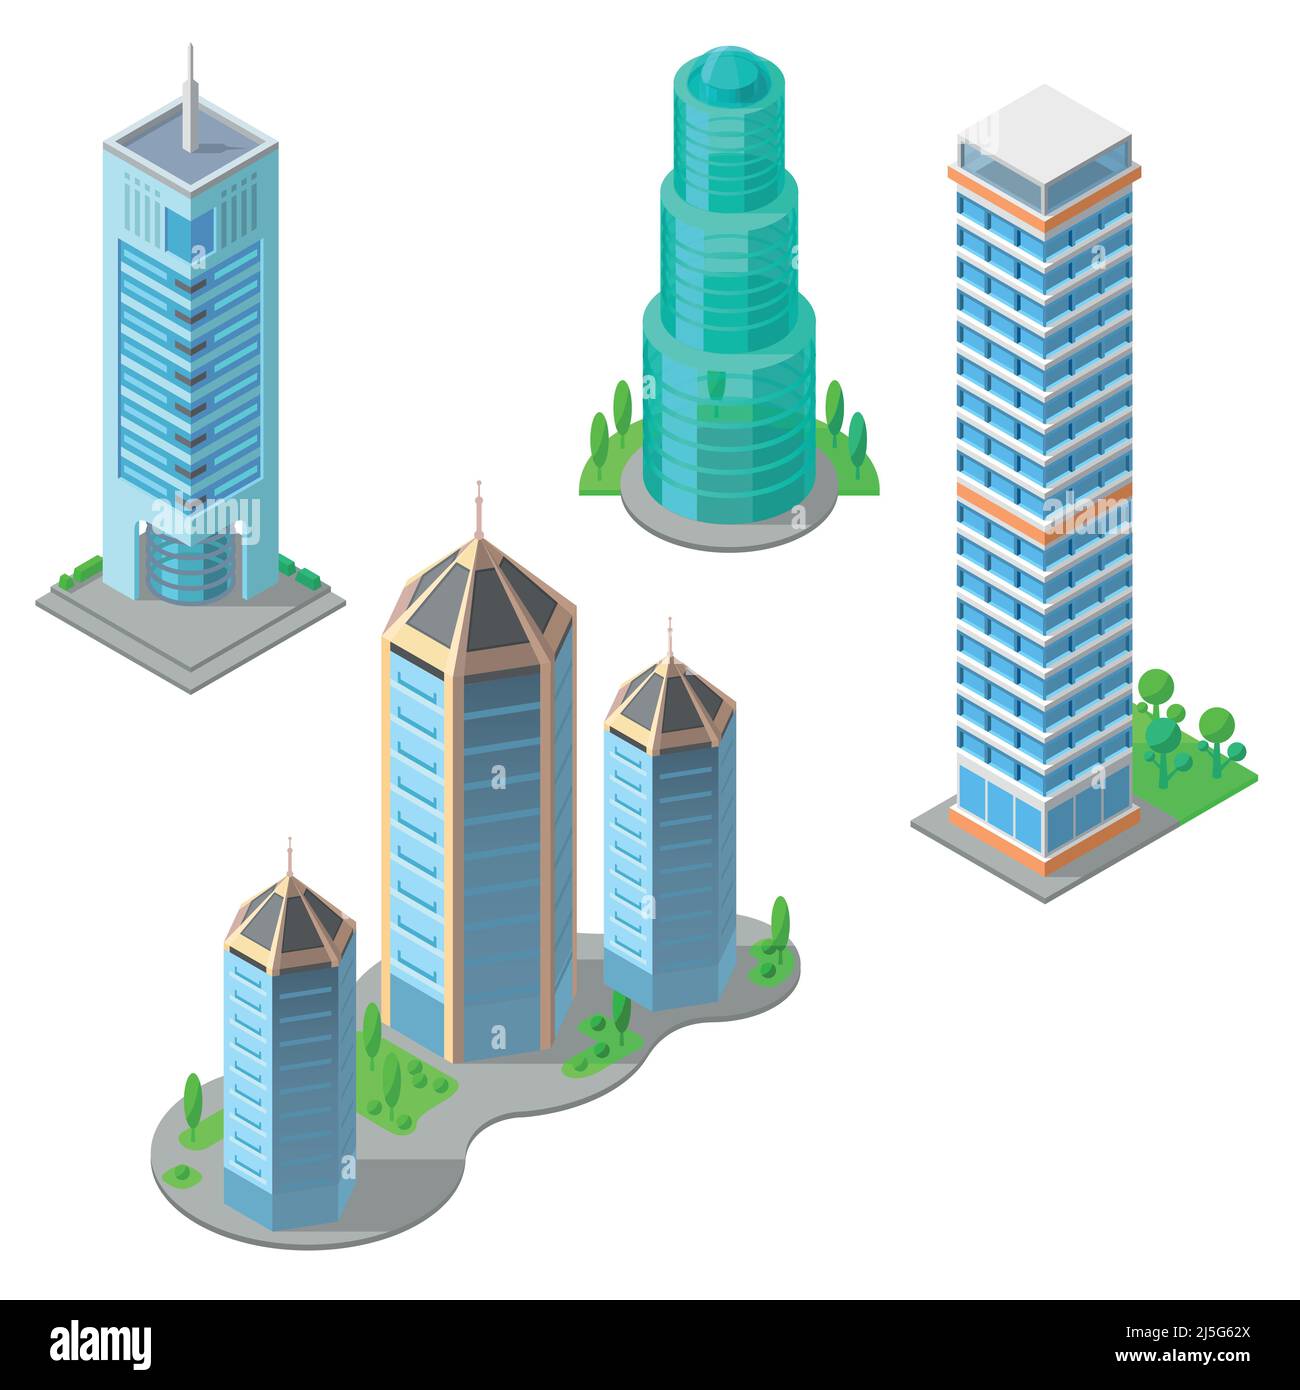 Insieme isometrico vettoriale di edifici moderni, grattacieli urbani, alte torri di affari, costruzioni residenziali a più piani isolate sullo sfondo. Archi Illustrazione Vettoriale